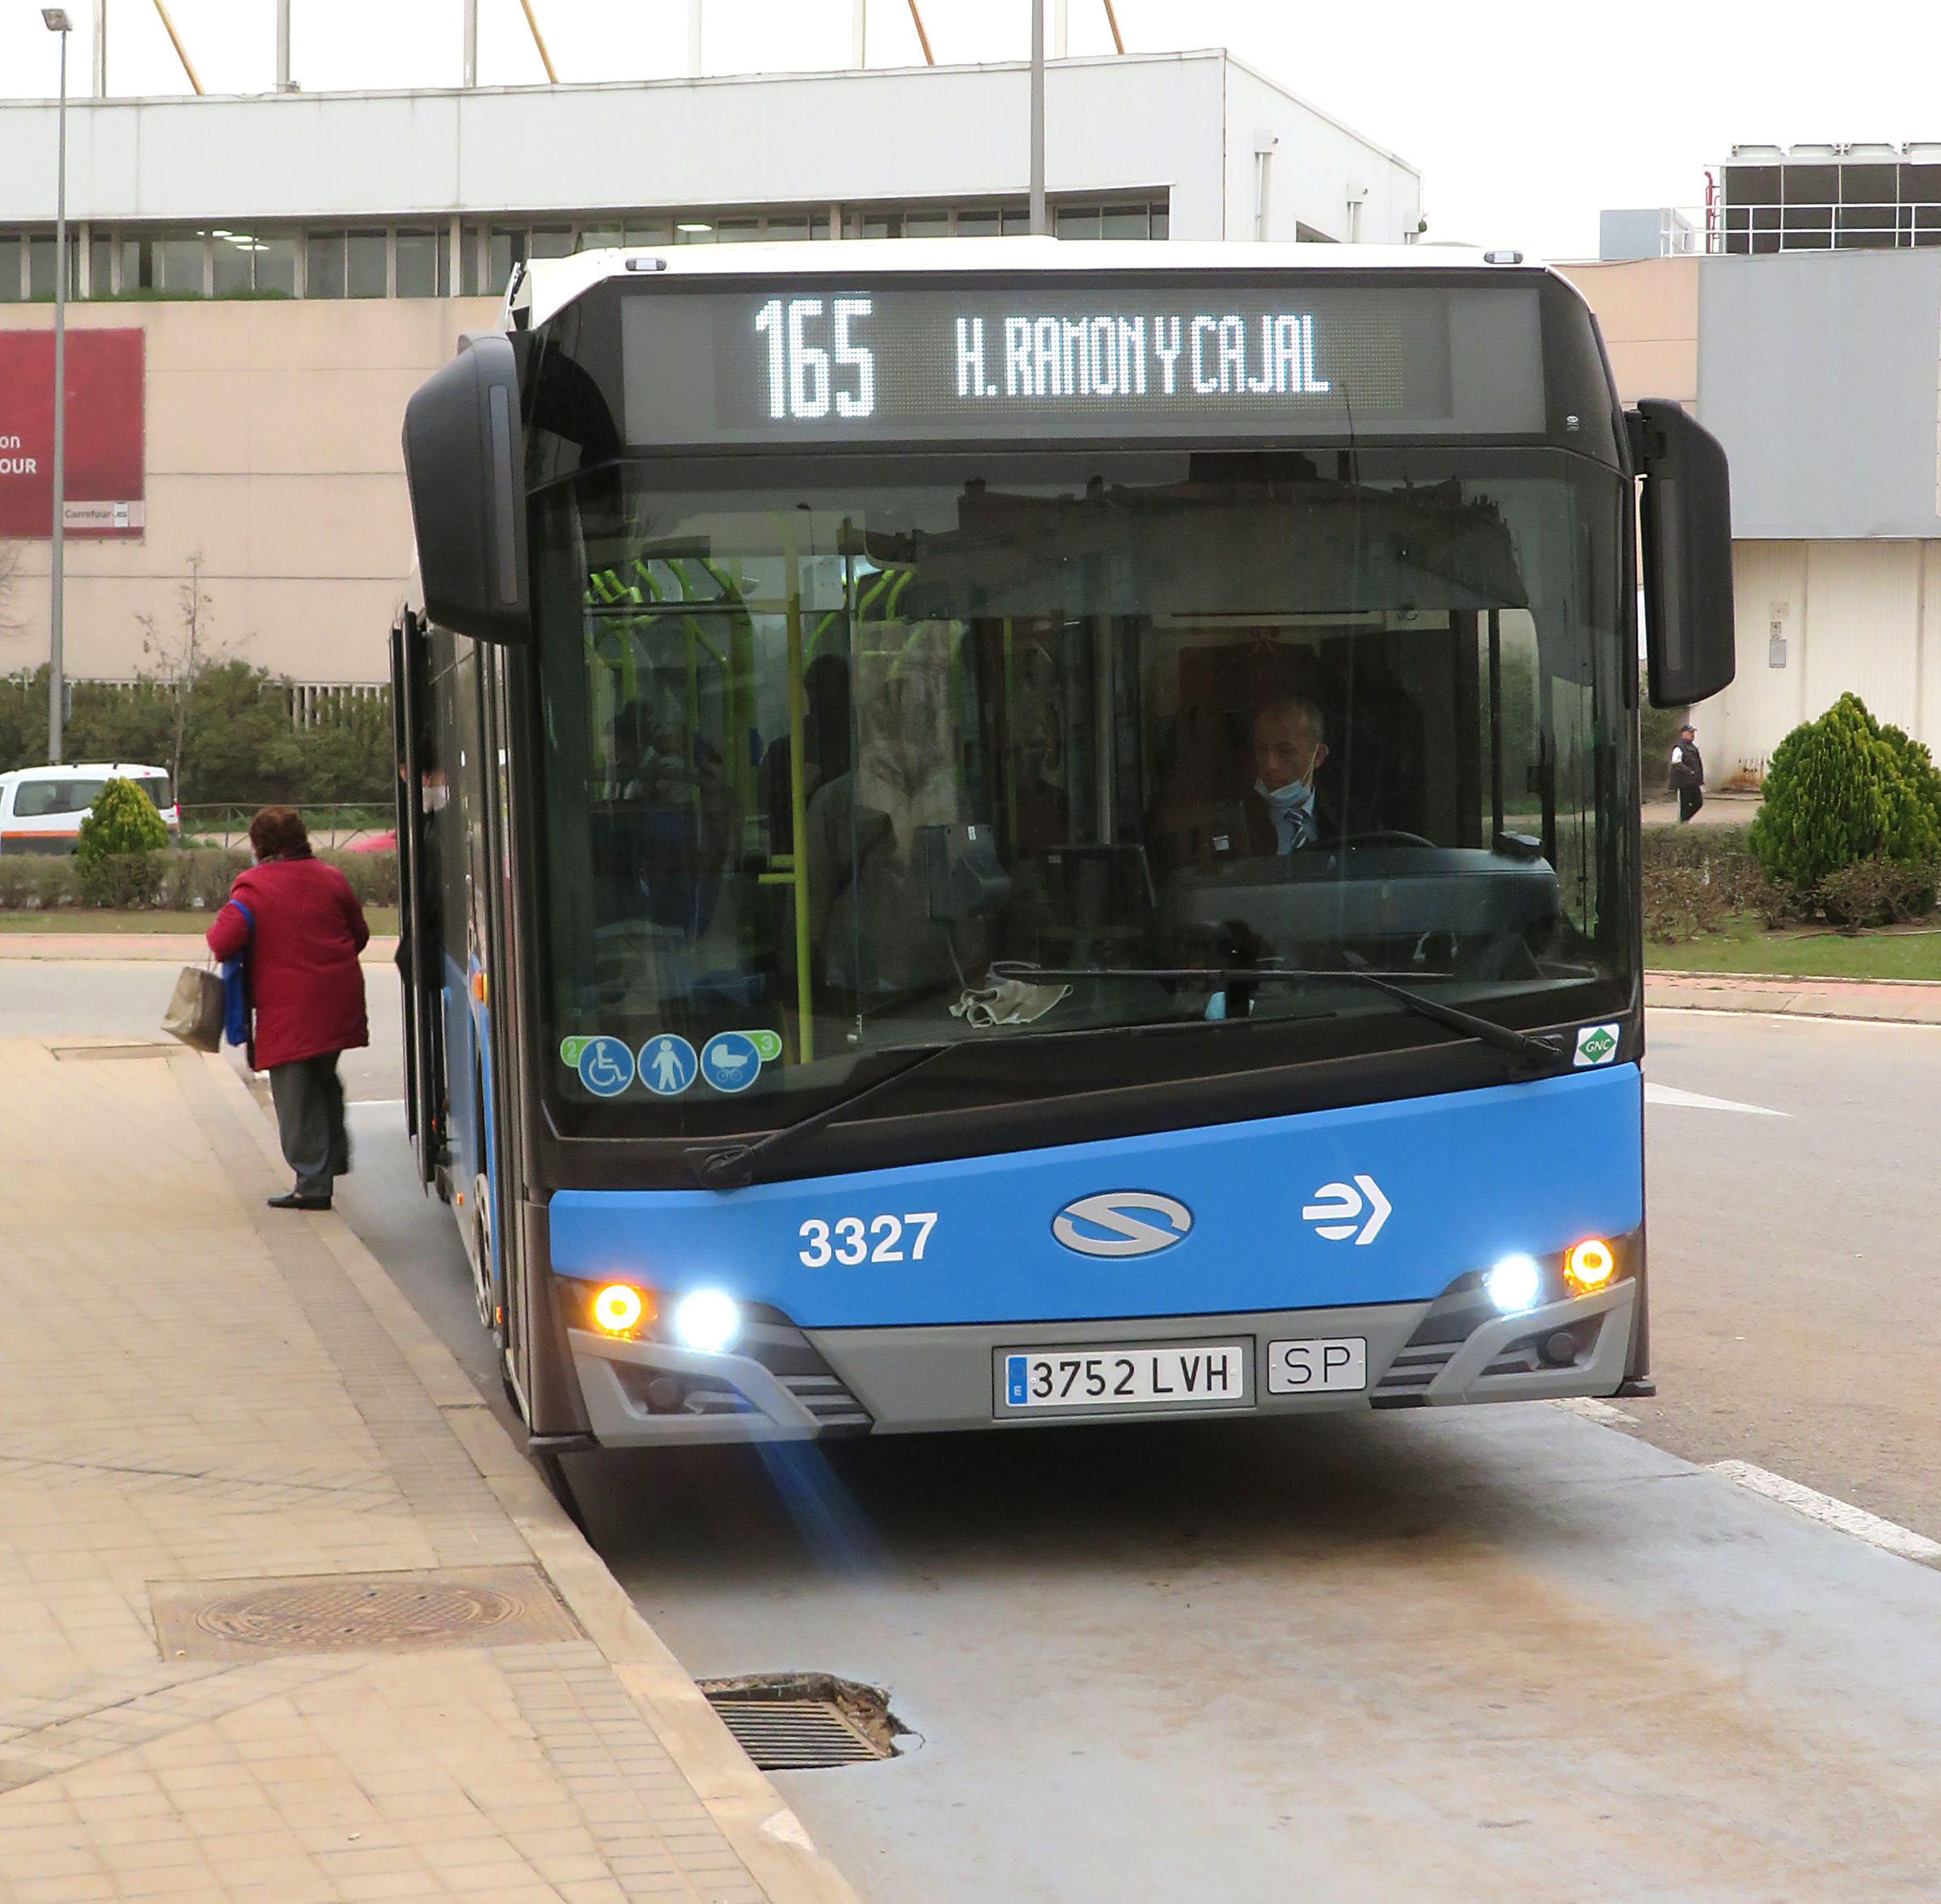 Bus 165 Ramón y Cajal